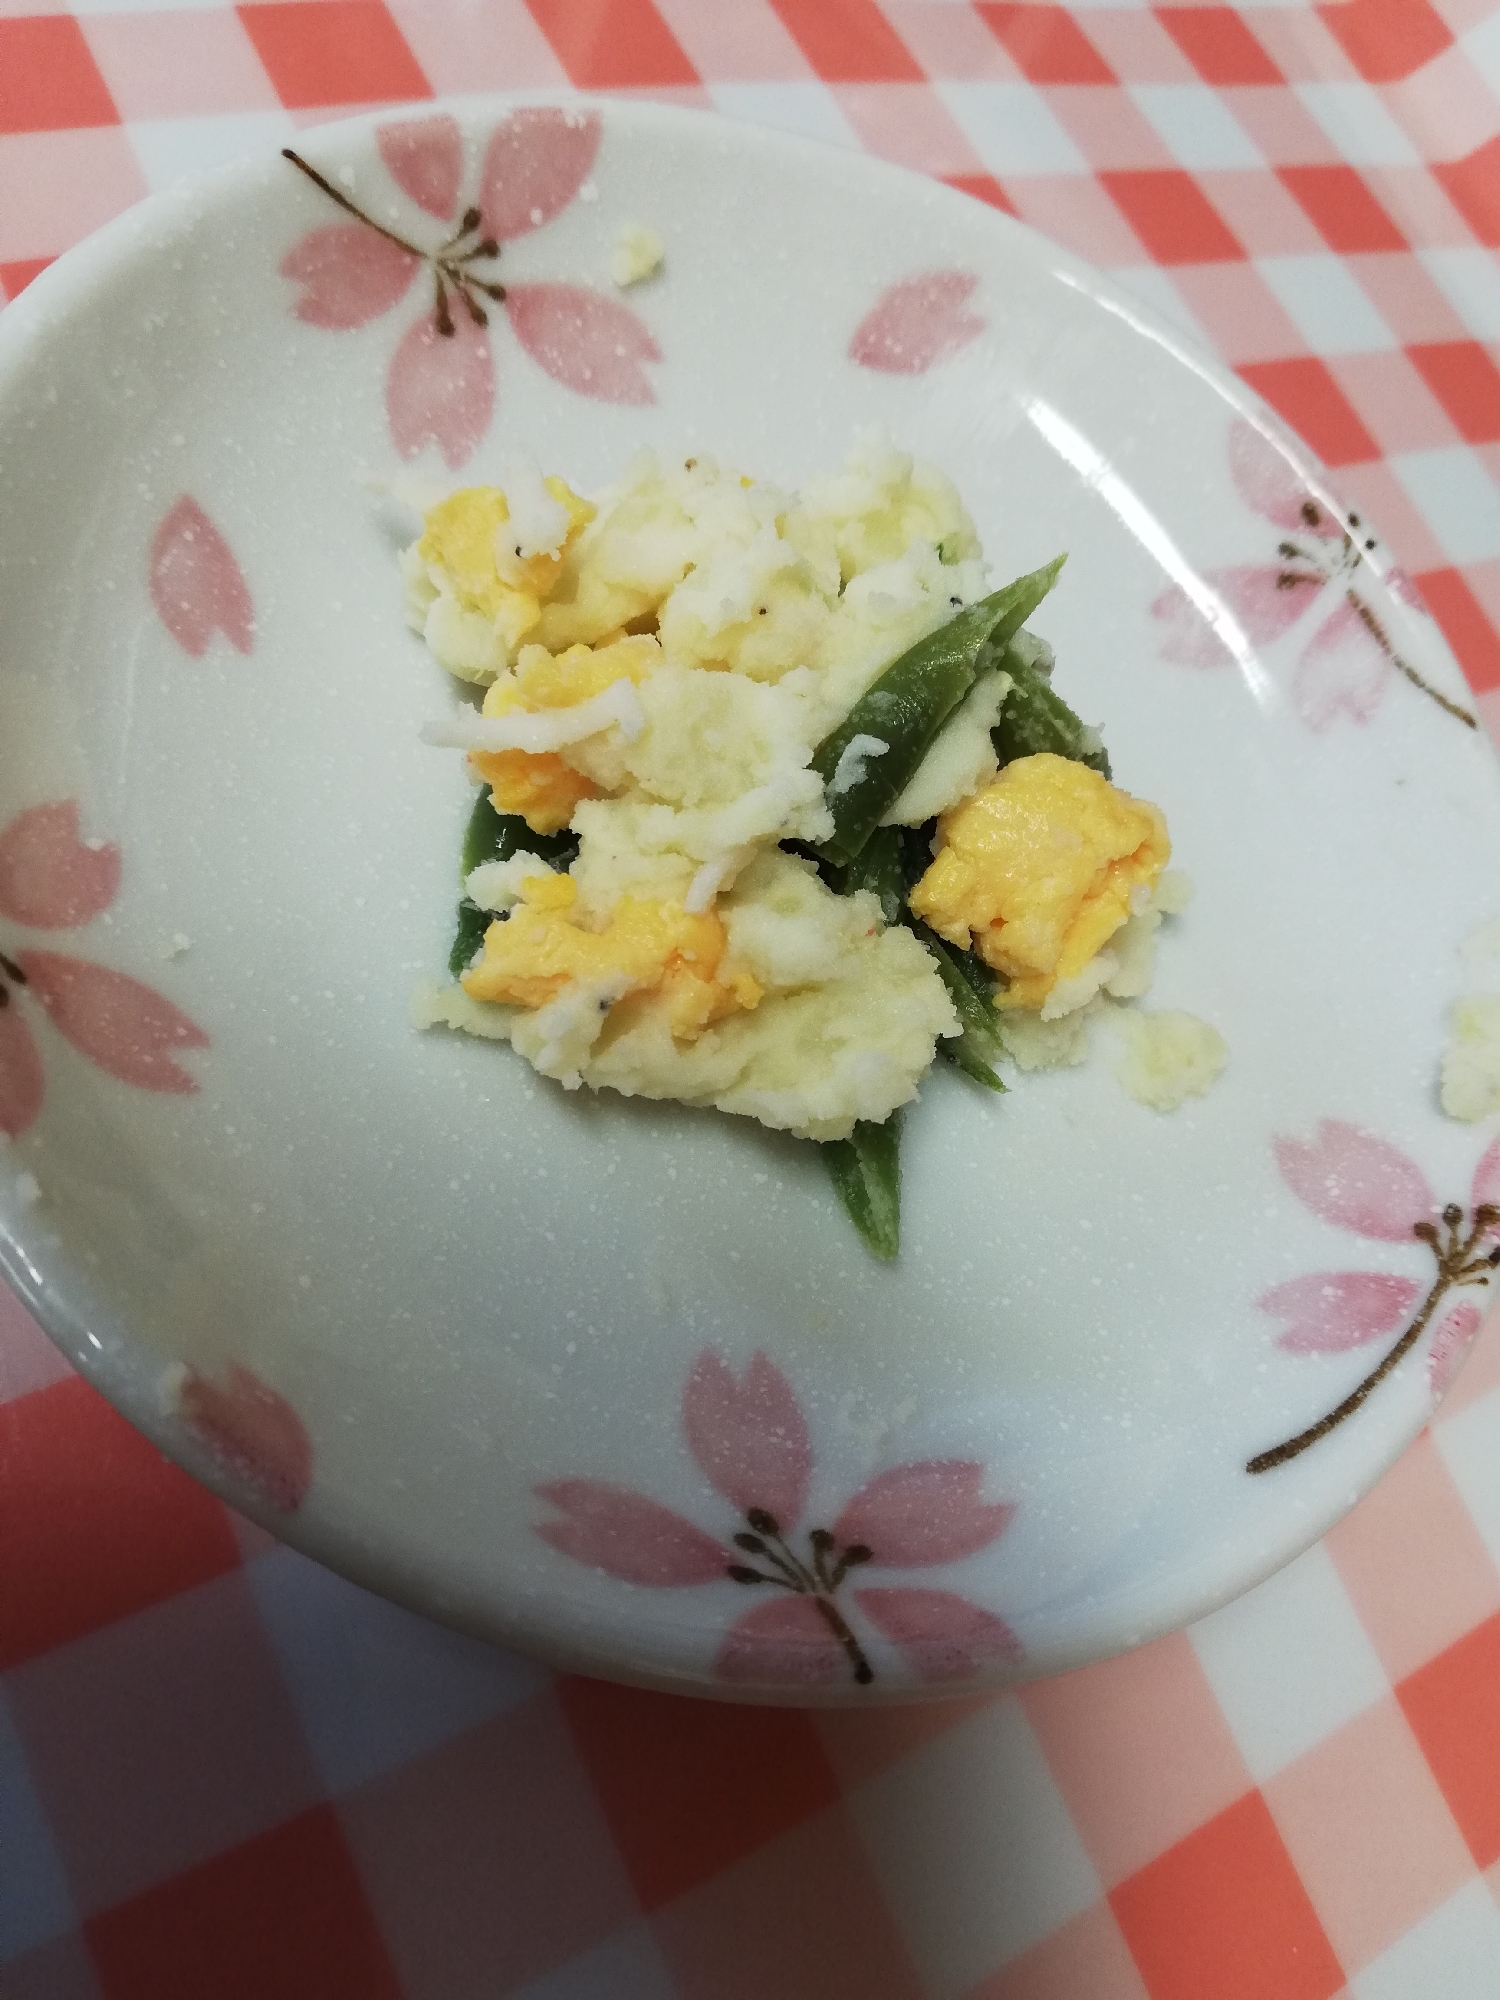 インゲンと炒り卵のポテトサラダ